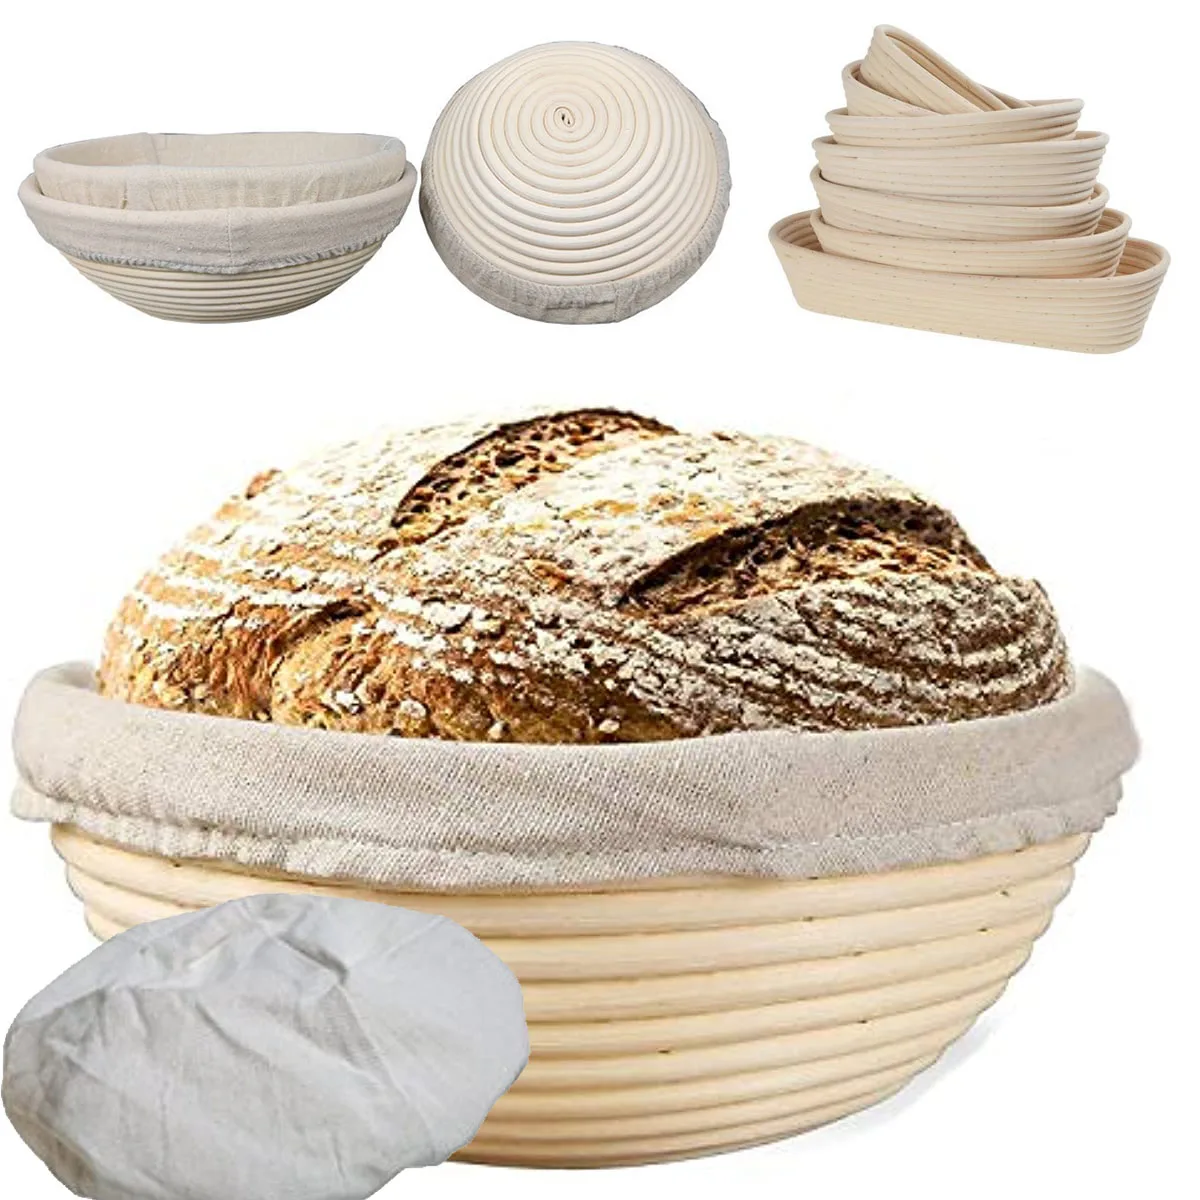 

Ротанг для кухни, натуральный хлеб, плетеная форма, тесто для выпечки хлеба, корзина для французского хлеба, инструменты для брожения, запеченные